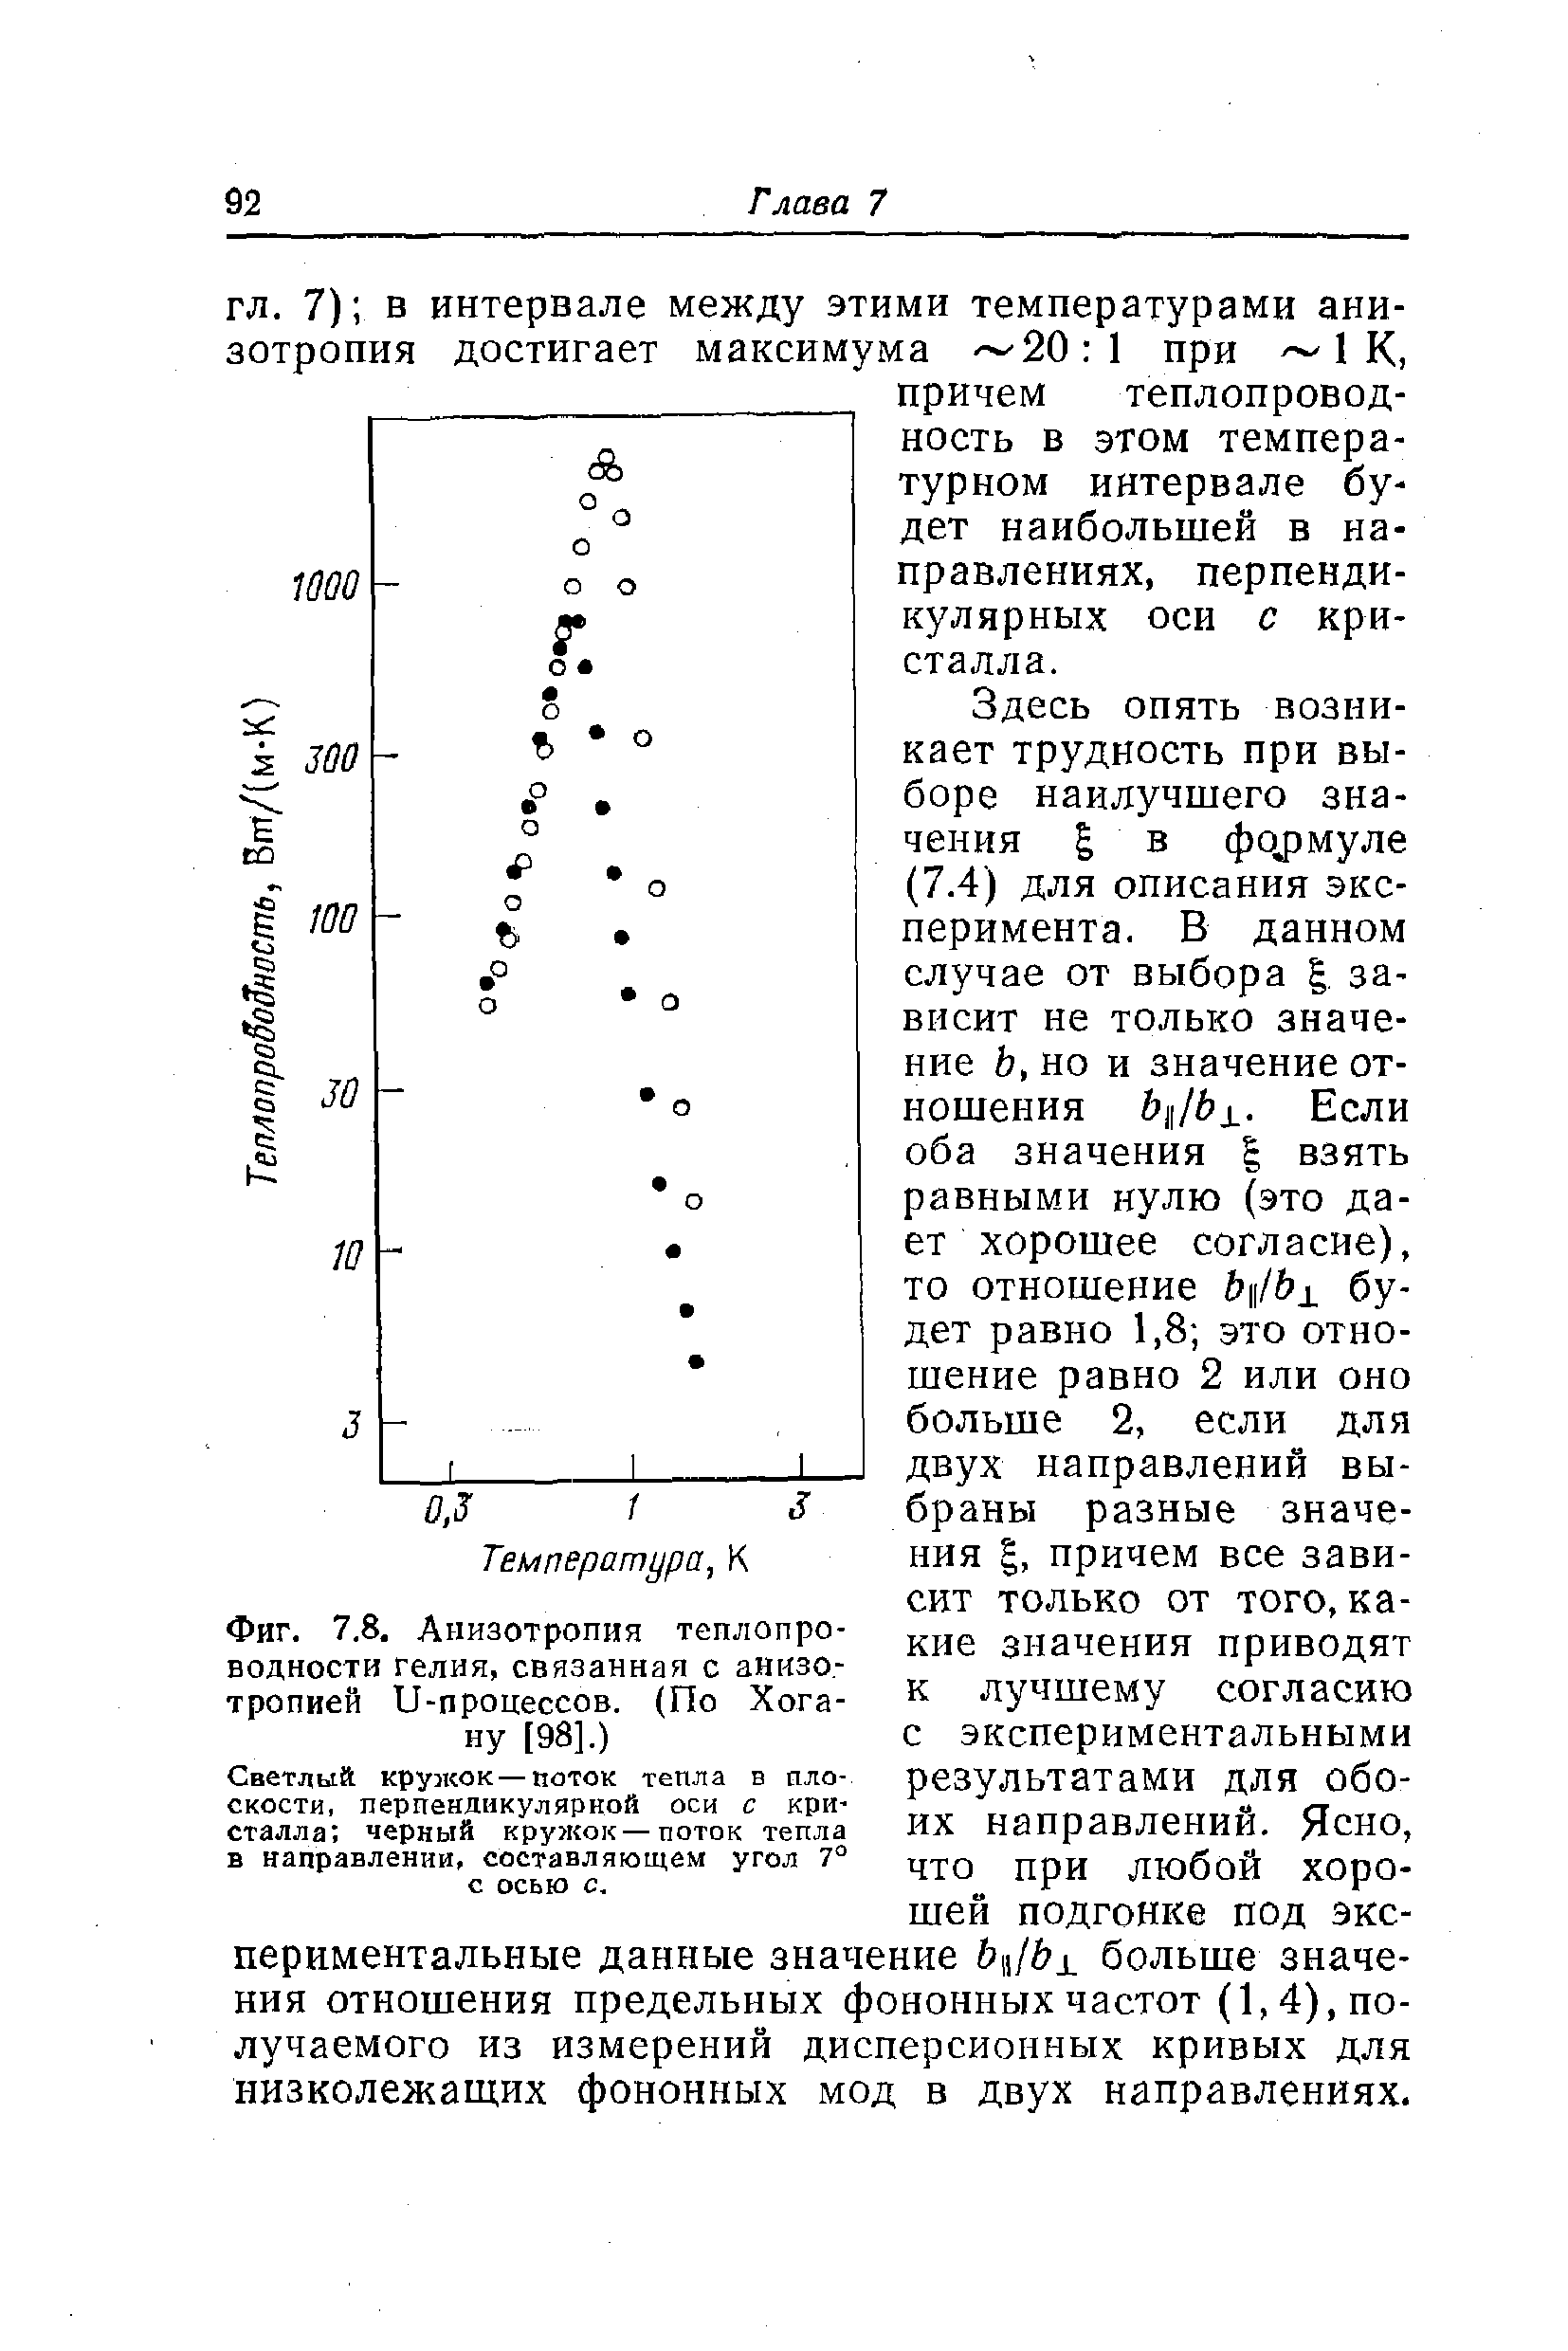 Фиг. 7.8. Анизотропия теплопроводности гелия,связанная с анизотропией и-процессов. (По Хогану [98].)
